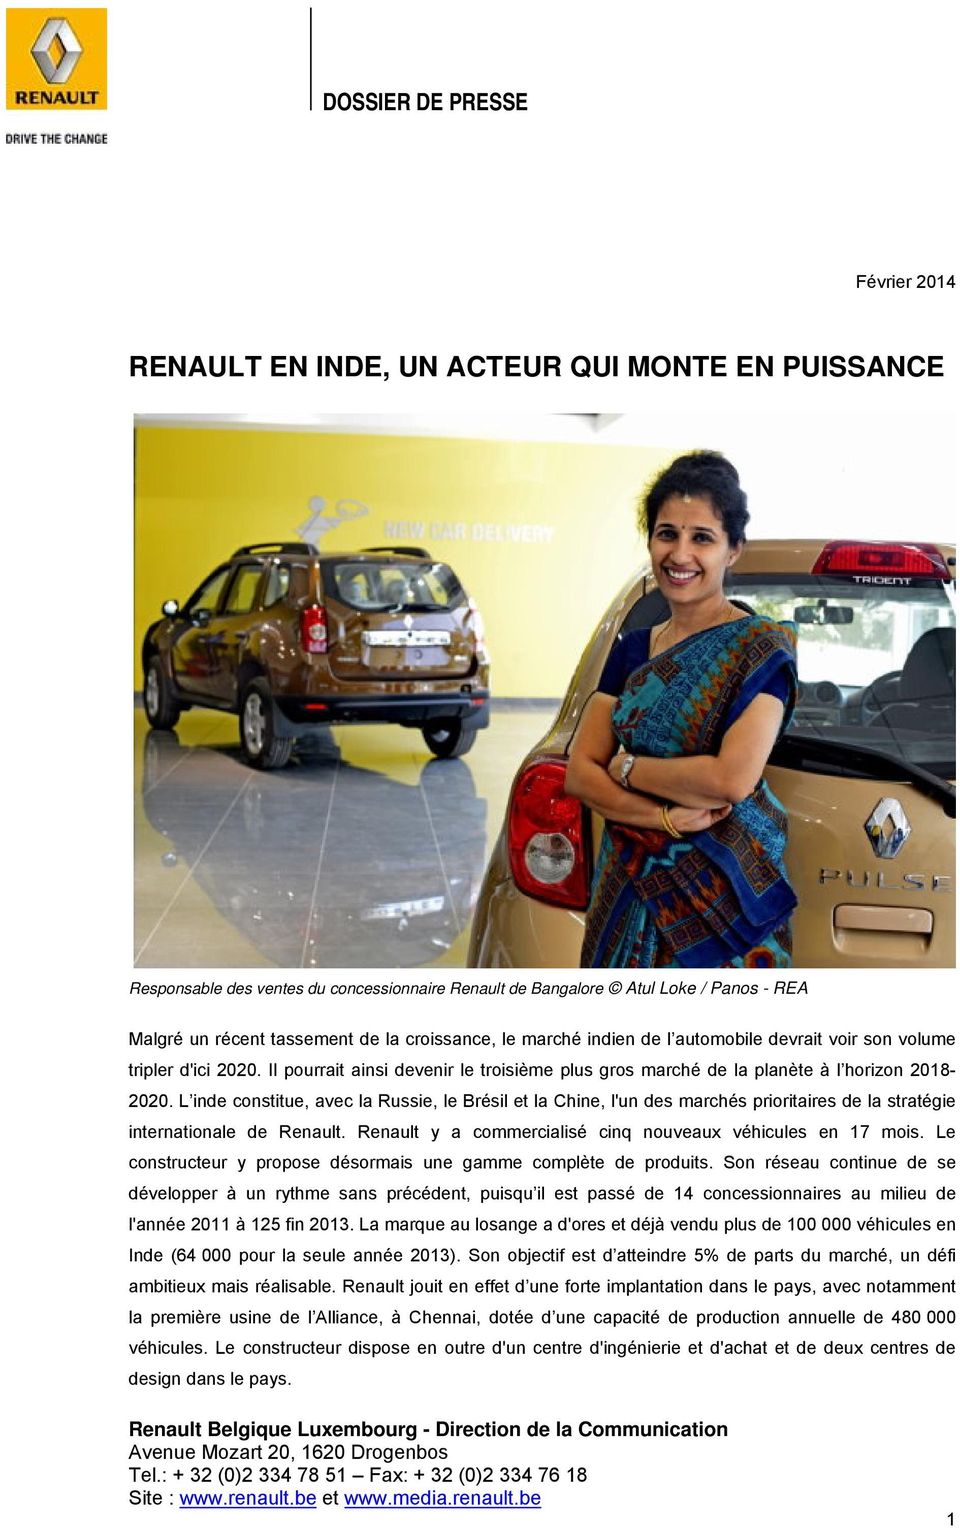 L inde constitue, avec la Russie, le Brésil et la Chine, l'un des marchés prioritaires de la stratégie internationale de Renault. Renault y a commercialisé cinq nouveaux véhicules en 17 mois.